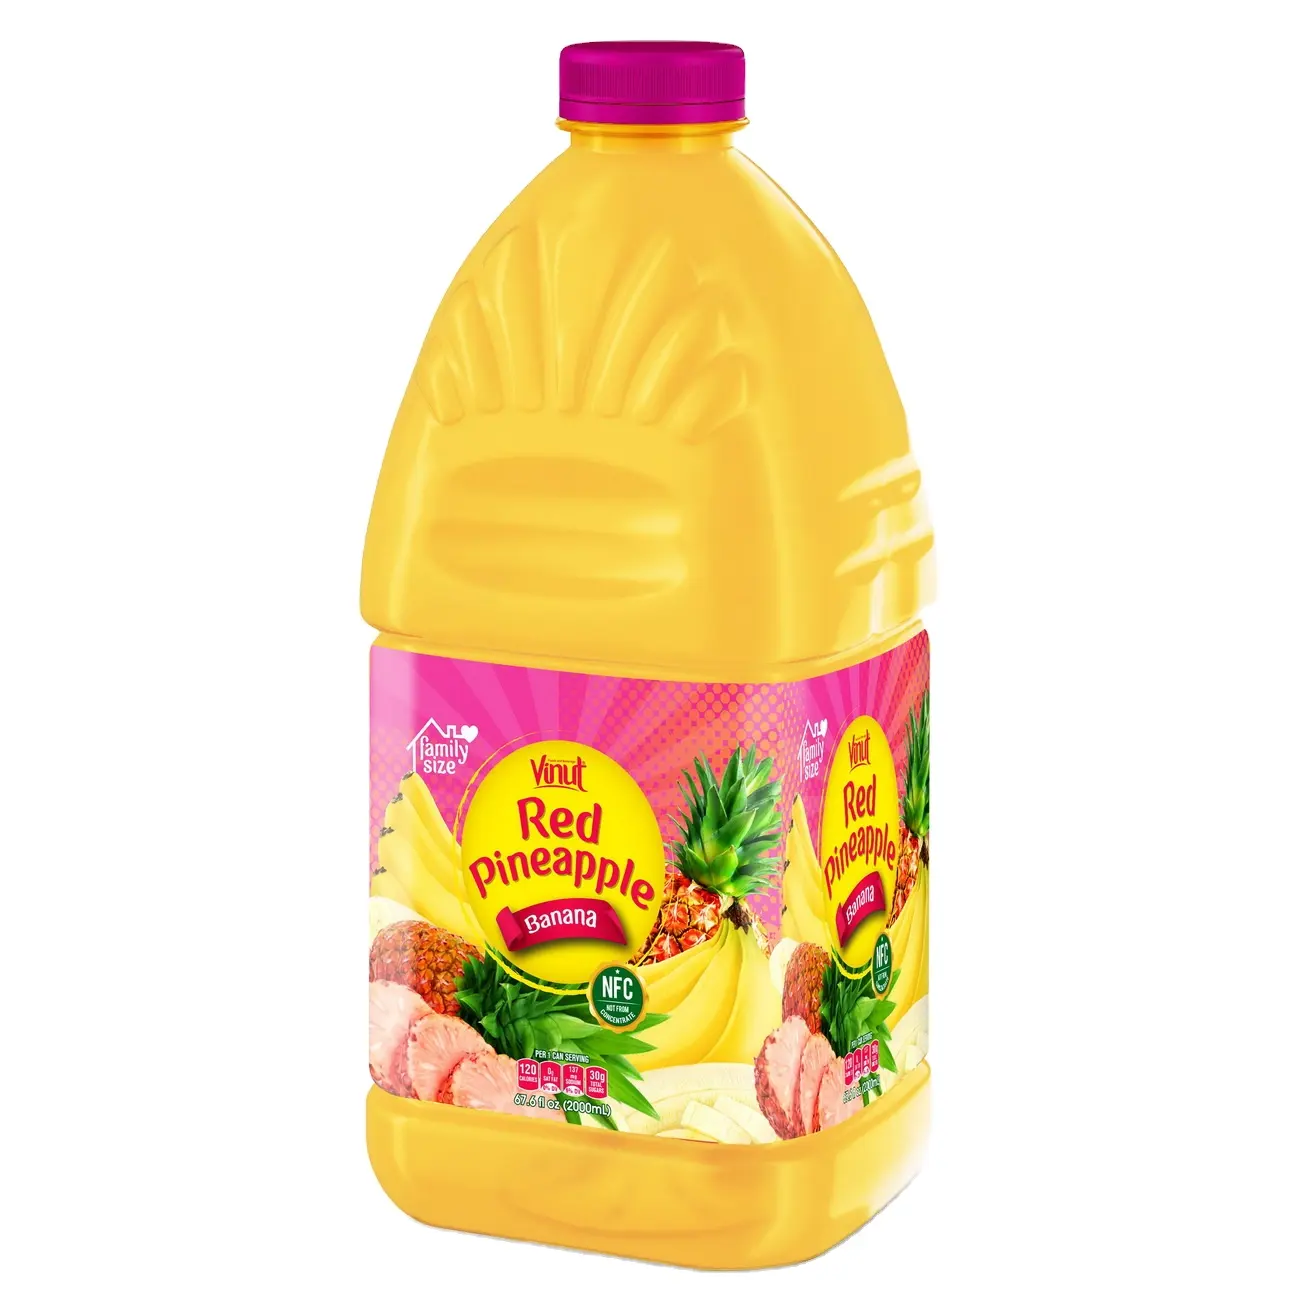 Floz-zumo de piña roja VINUT, diseño de embalaje de bebidas, zumo de piña, plátano, 67,6